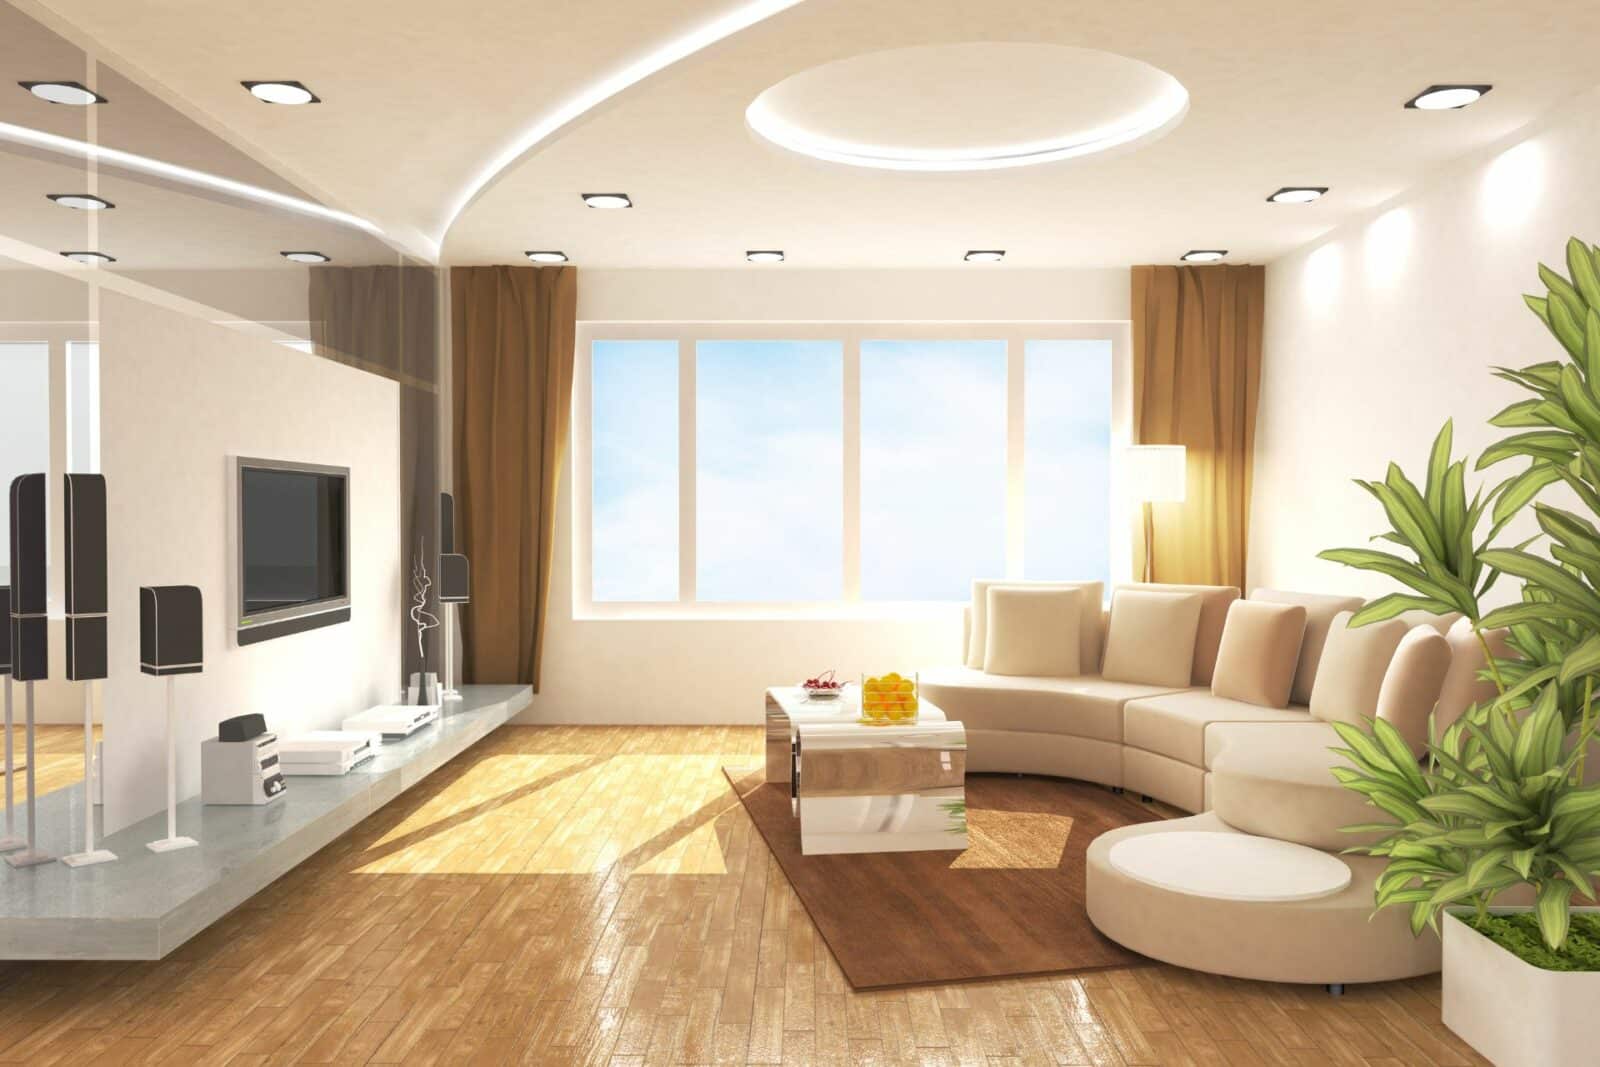 design of living room false ceiling